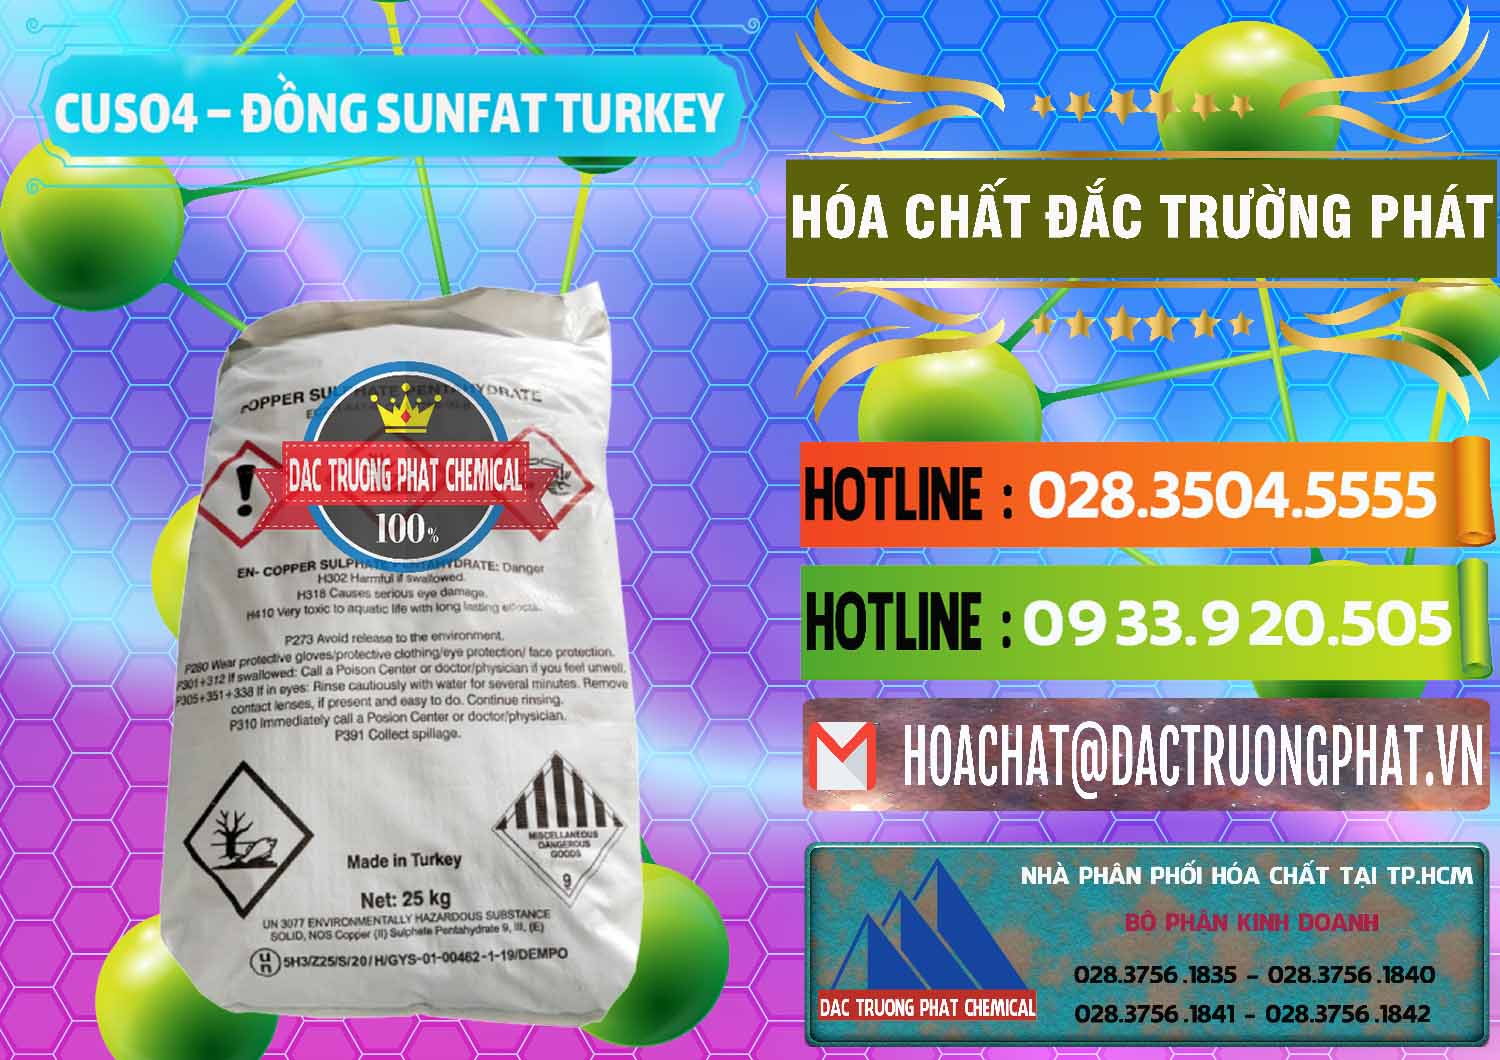 Cty bán - cung cấp CuSO4 – Đồng Sunfat Thổ Nhĩ Kỳ Turkey - 0481 - Chuyên cung cấp - nhập khẩu hóa chất tại TP.HCM - cungcaphoachat.com.vn